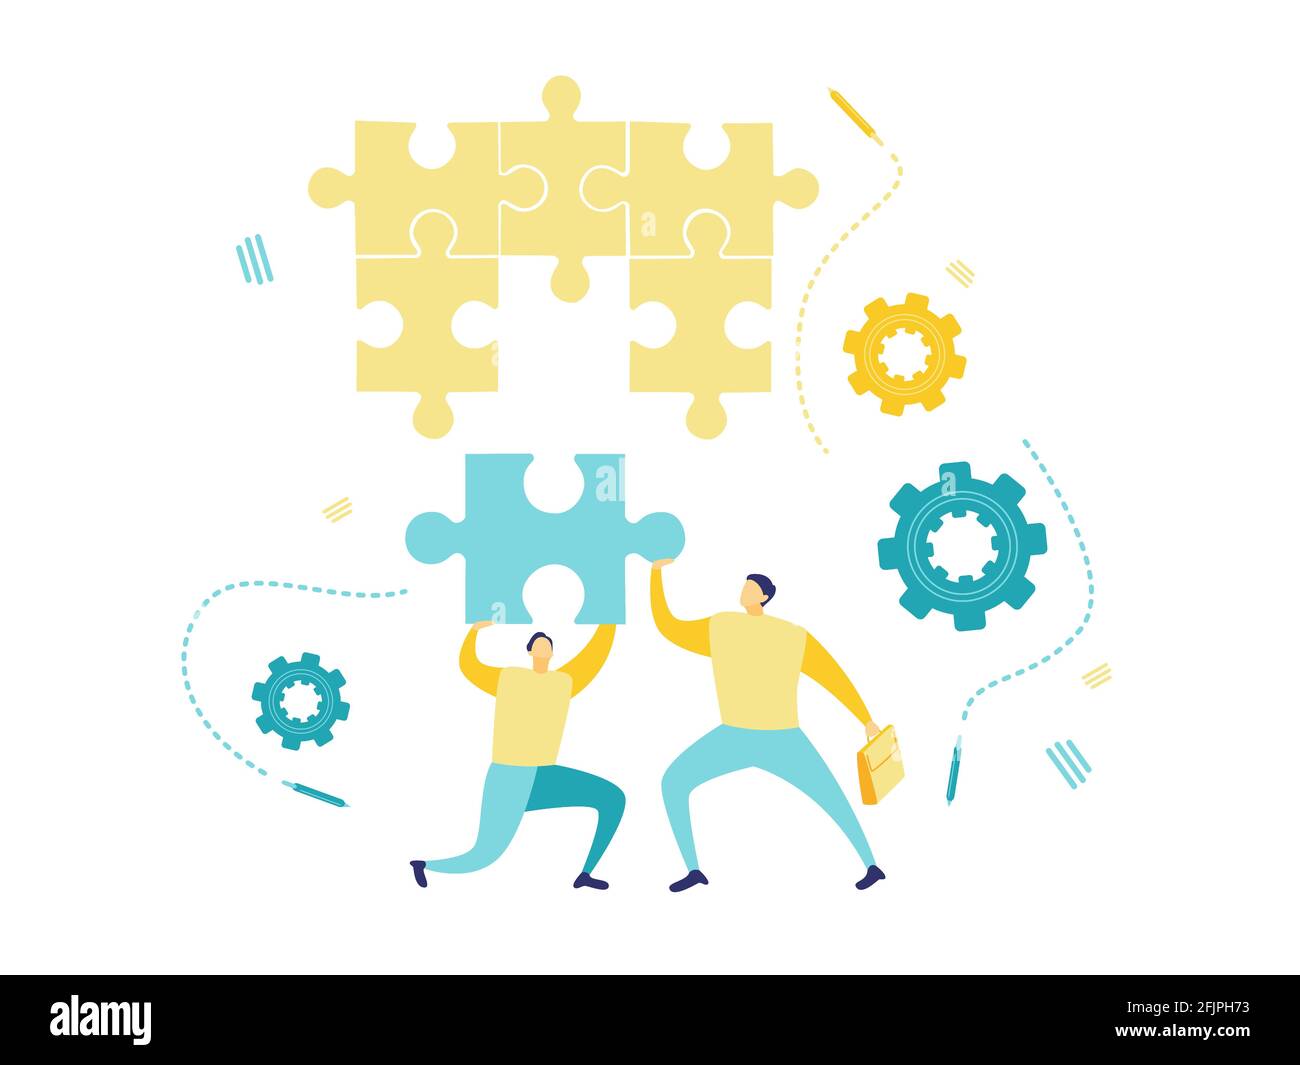 Illustrazione piatta di due uomini d'affari che tengono un puzzle da organizzare. Concetto di uomo d'affari con pezzo di puzzle mancante jigsaw. Illustrazione Vettoriale